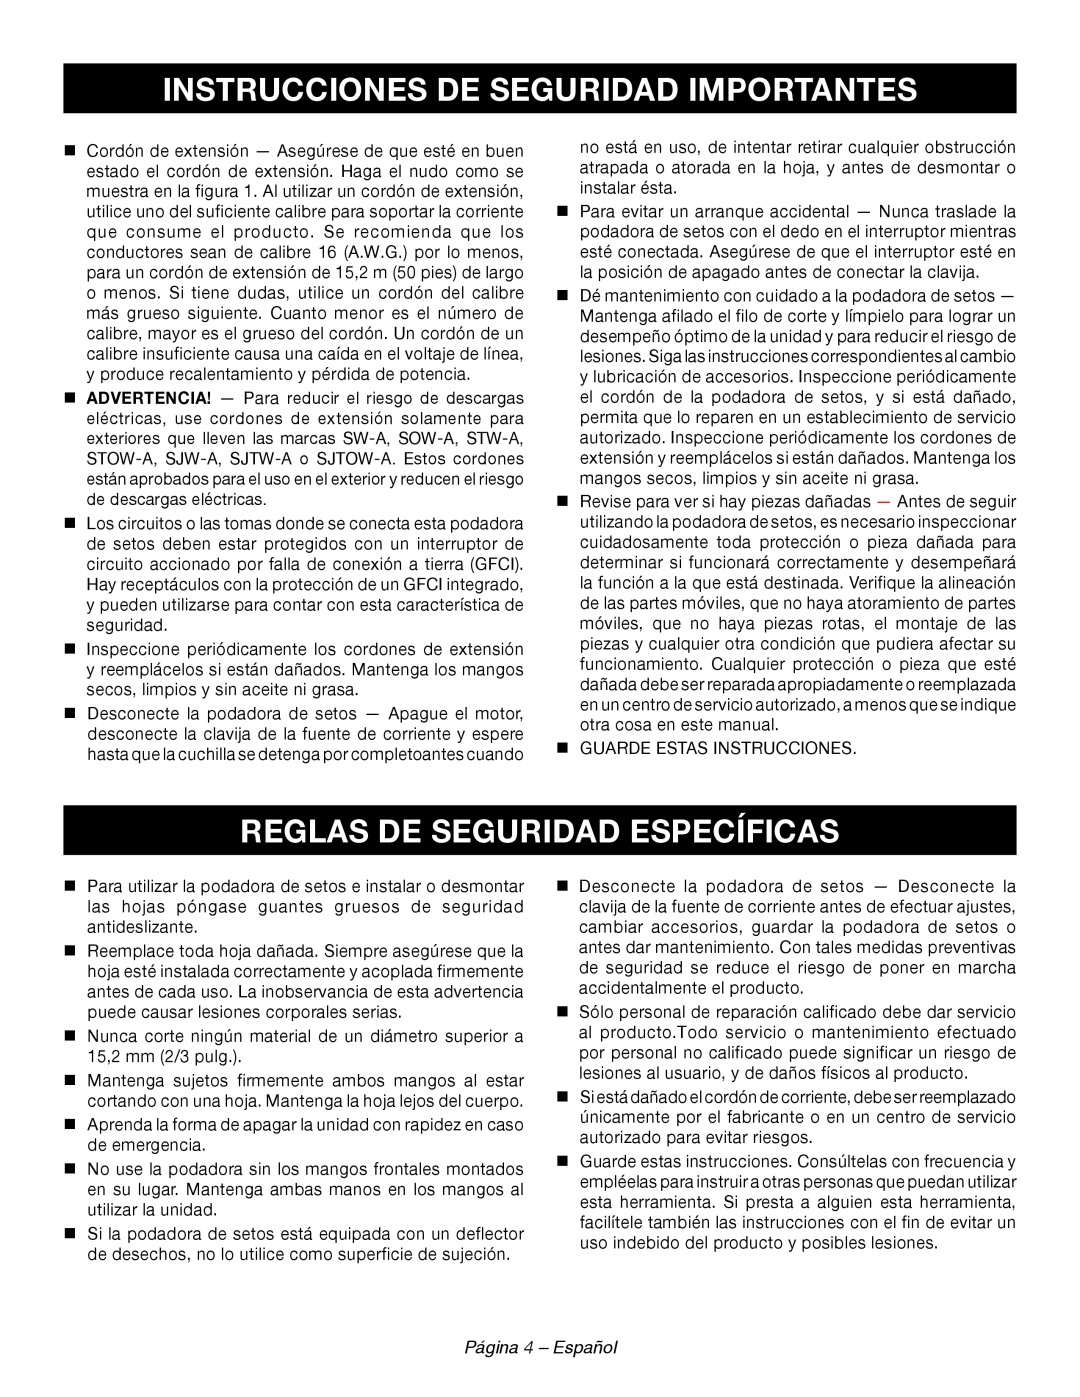 Ryobi RY44140 Reglas De Seguridad Específicas, Página 4 - Español, Instrucciones De Seguridad Importantes 